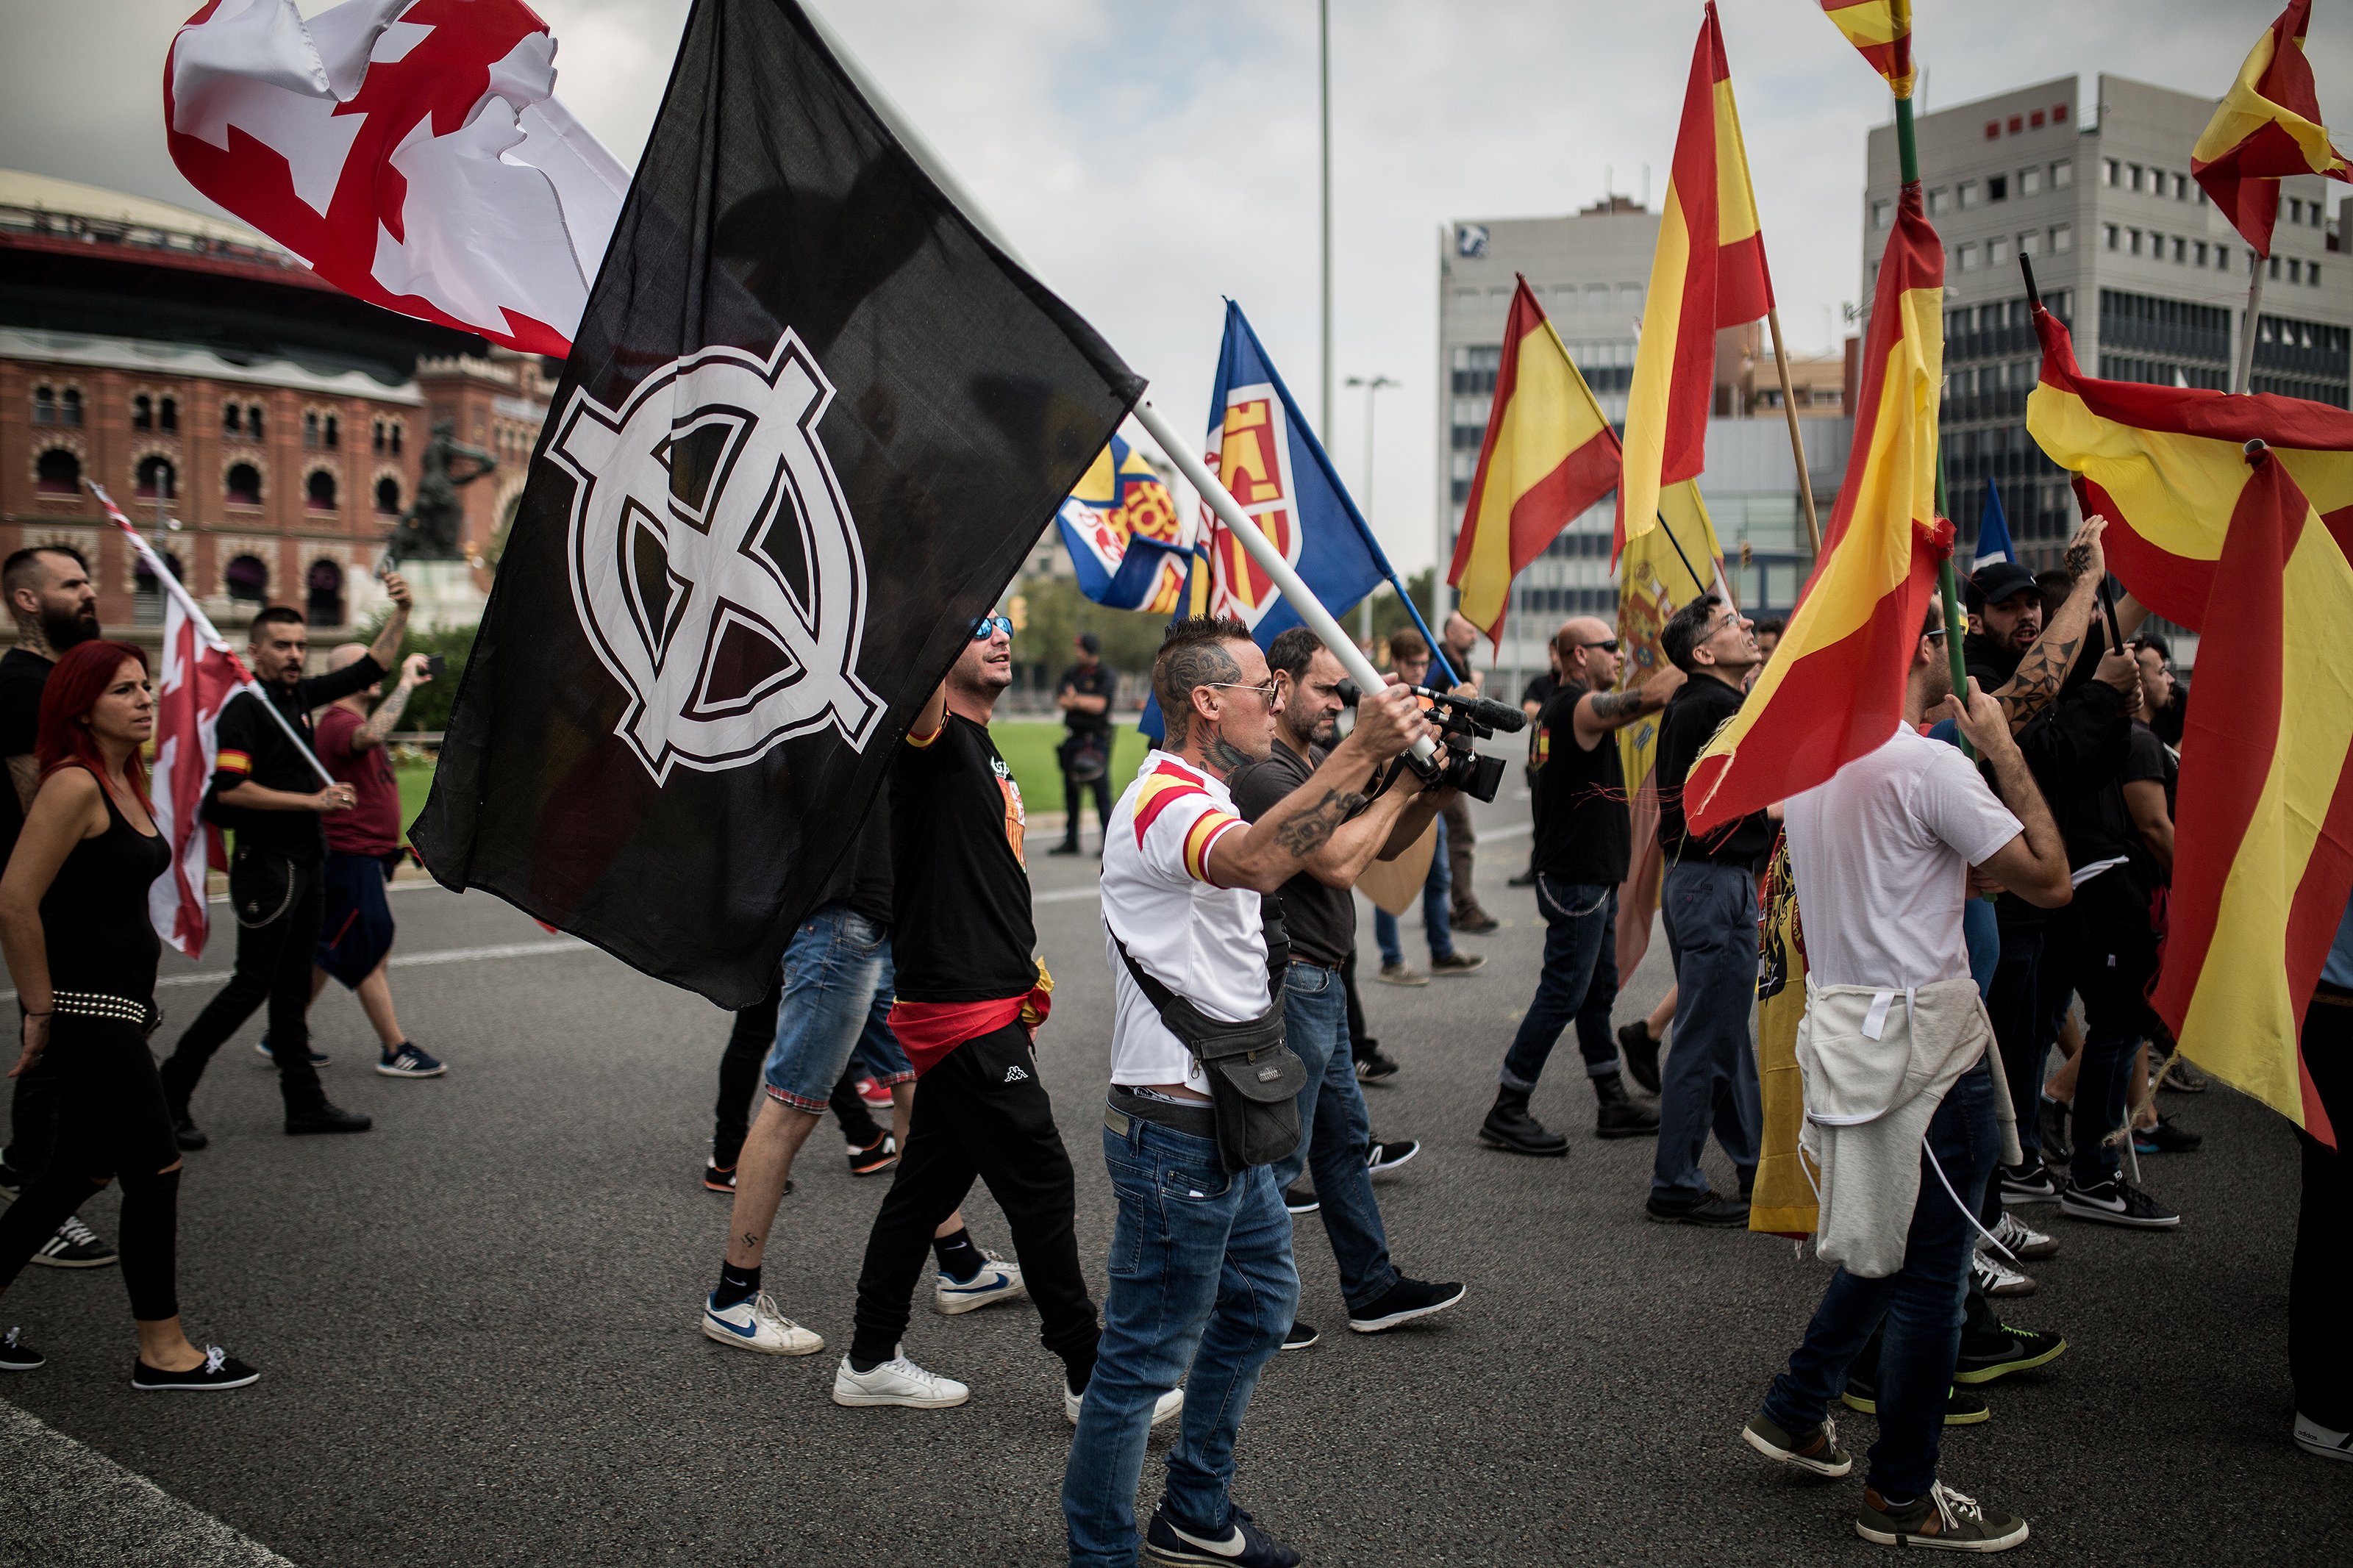 Al Jazeera preveu un augment del feixisme a Europa, "sobretot a Espanya amb Vox"